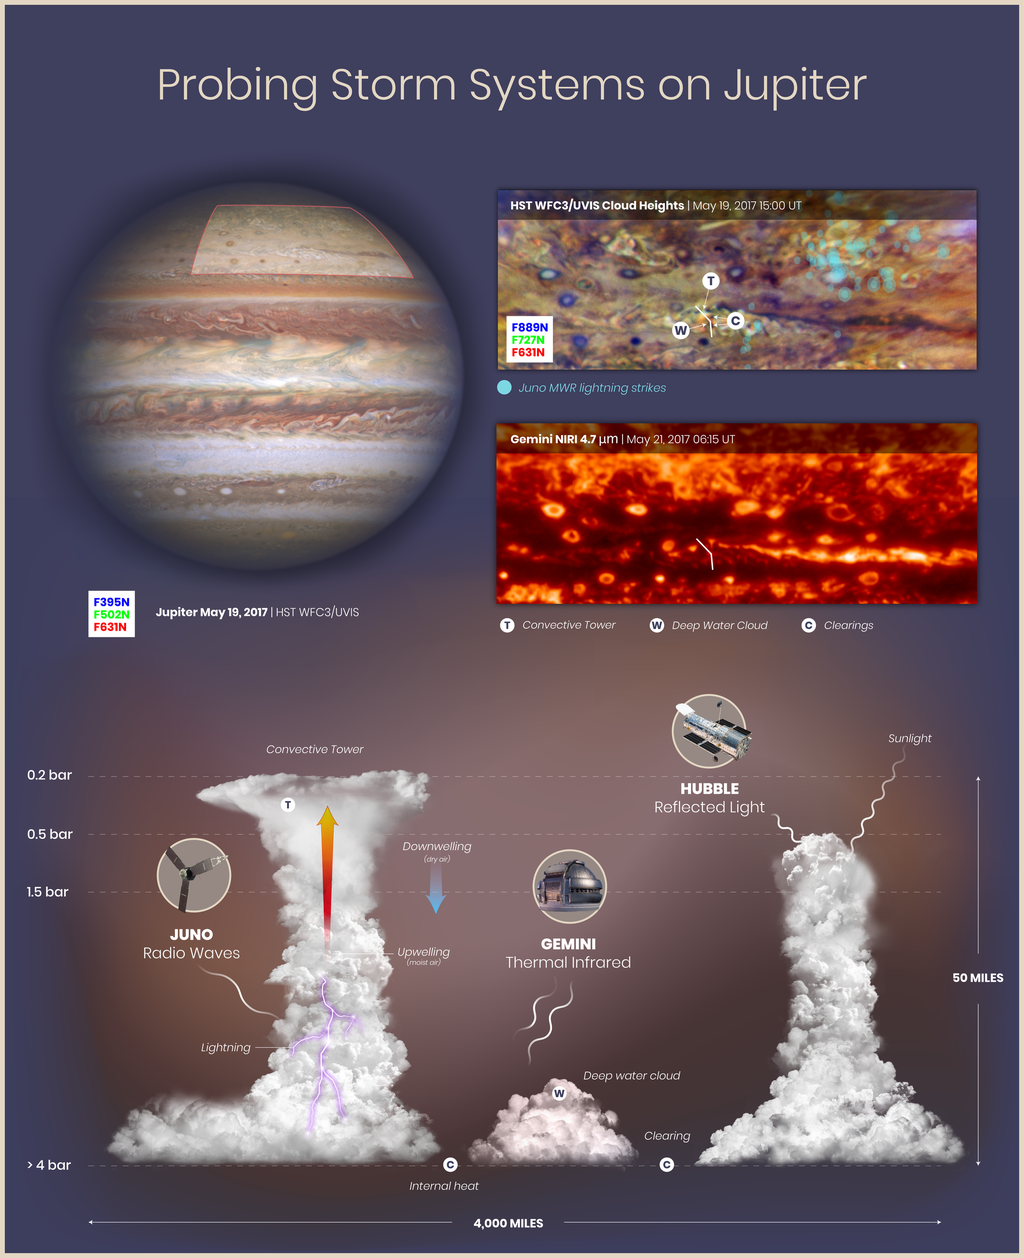 Este gráfico mostra observações e interpretações de estruturas de nuvens e circulação atmosférica em Júpiter. Os raios são agrupados em regiões turbulentas, onde há nuvens profundas de águas e onde o ar úmido está subindo para formar altas torres convectivas (Imagem:NASA/ESA/M.H. Wong/A. James/M.W. Carruthers/S. Brown)